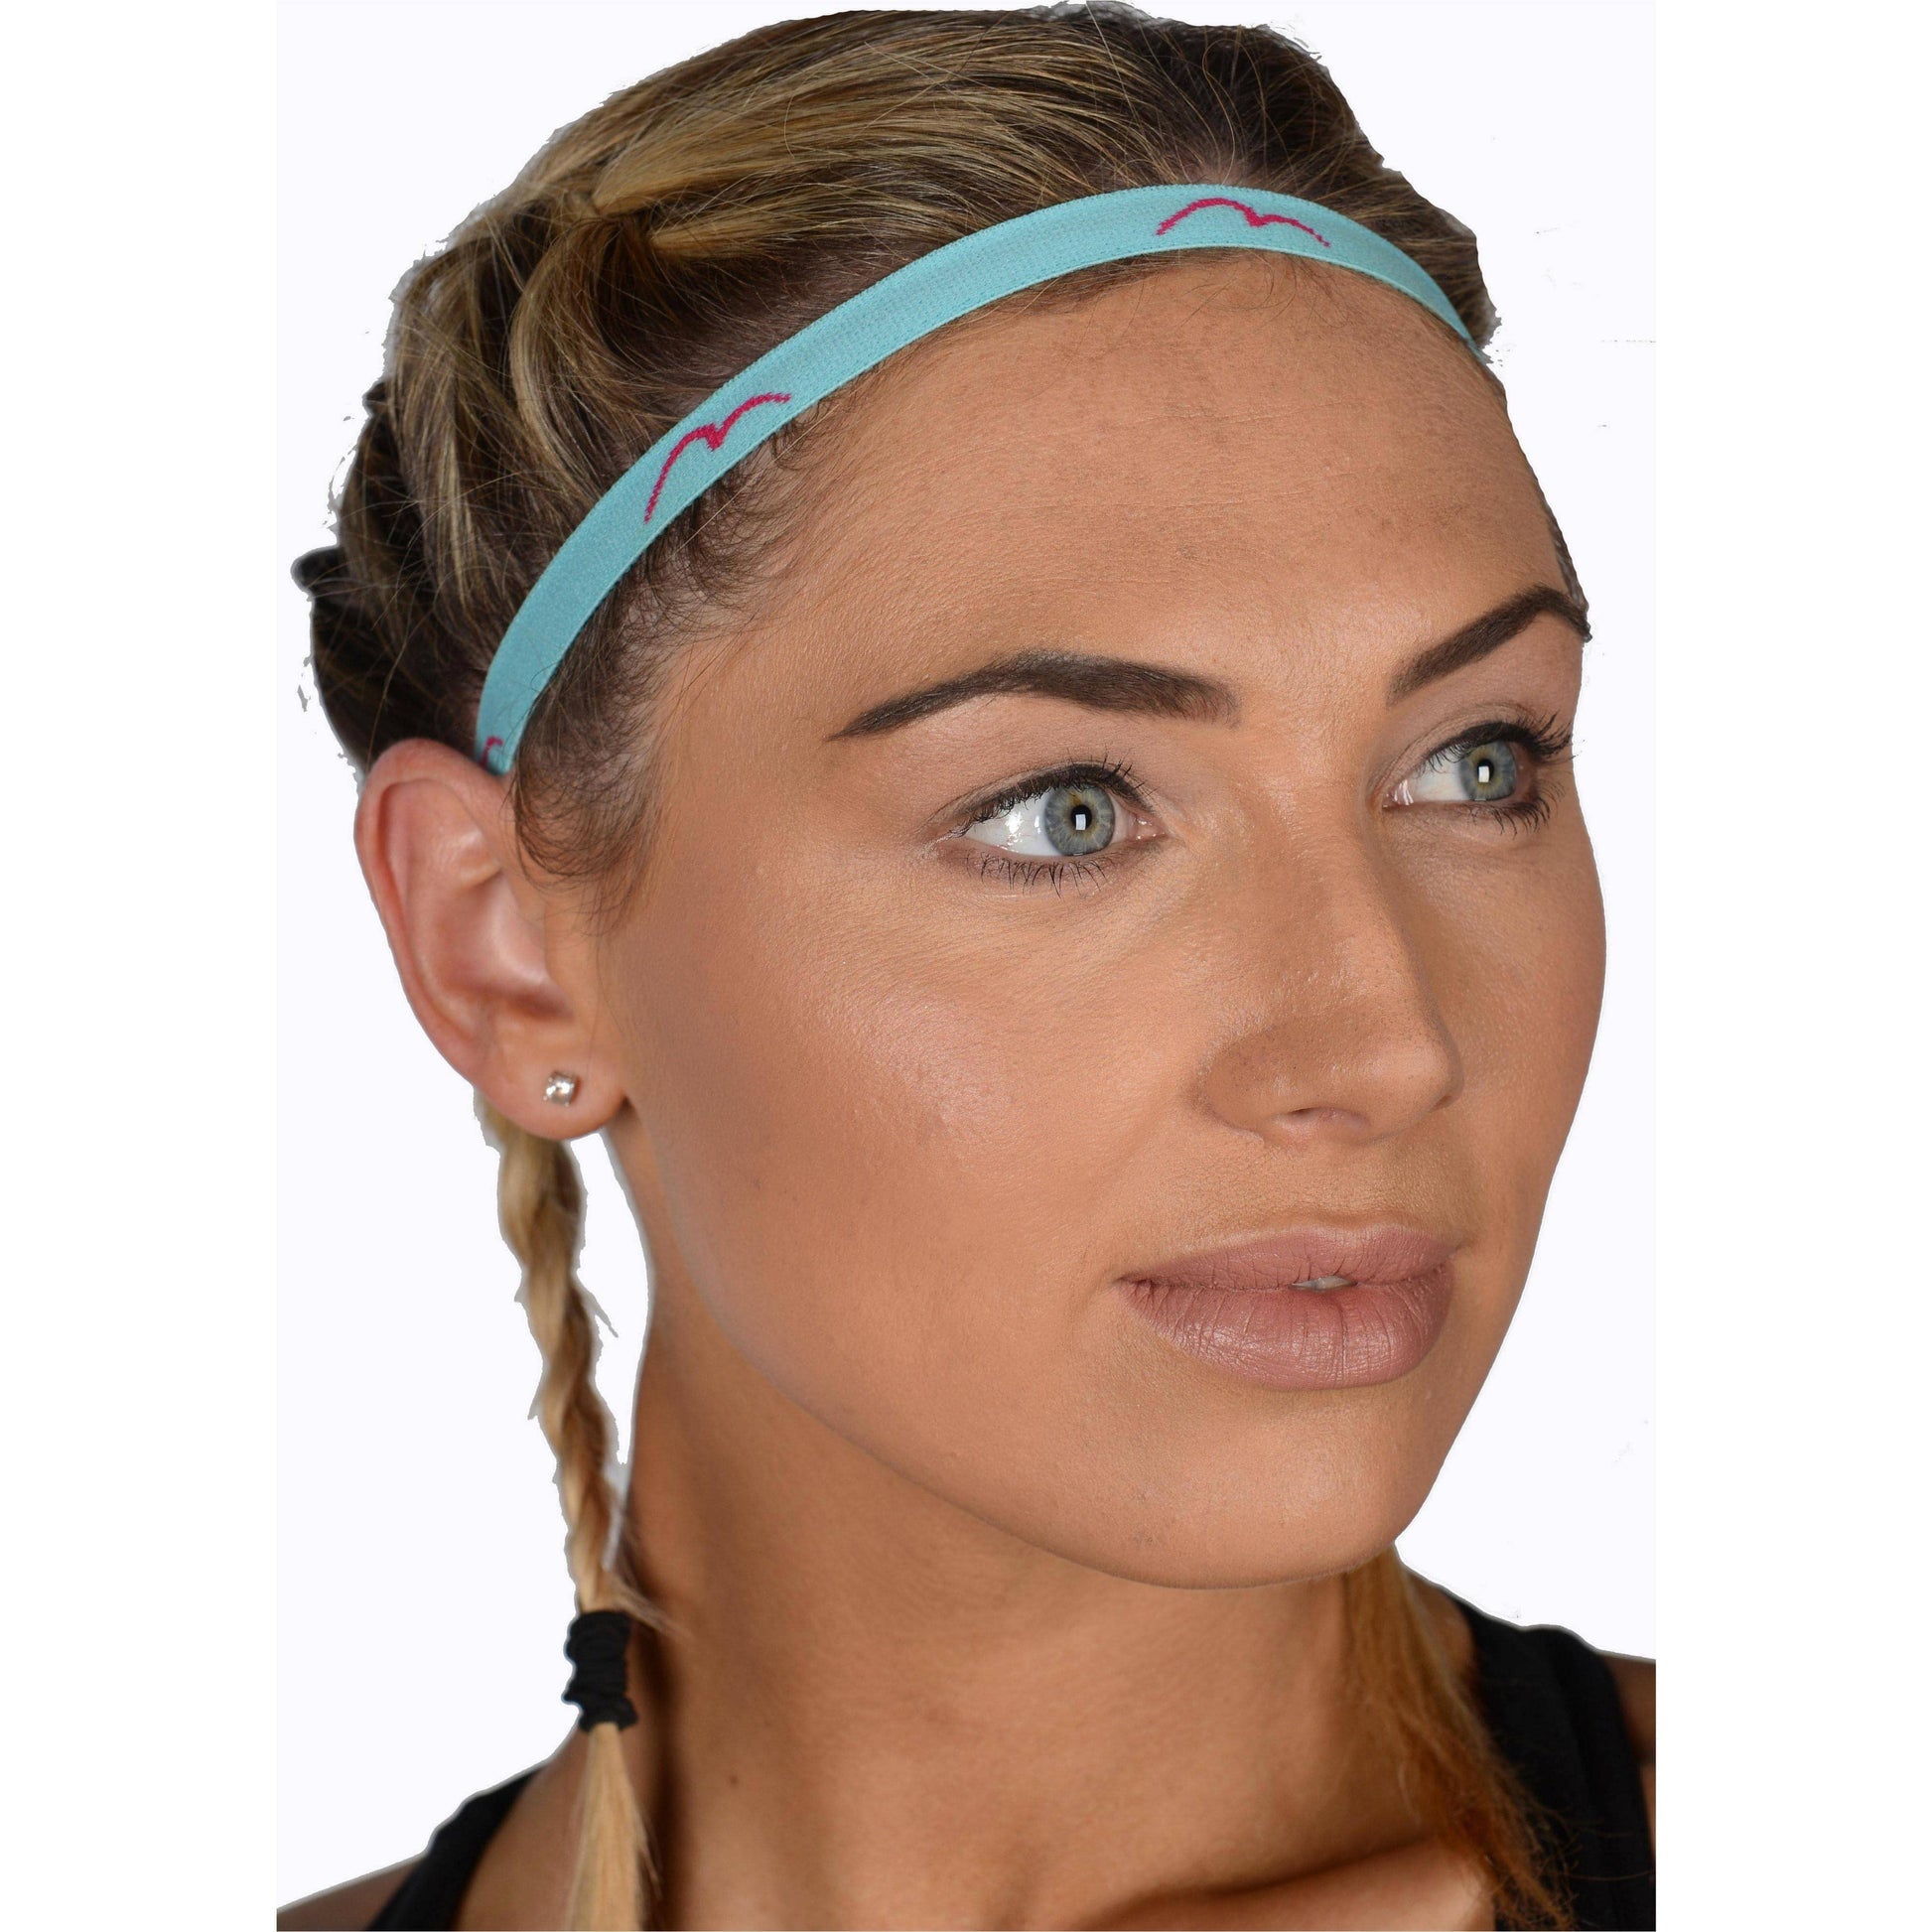 More Mile Tress Tamer Headbands (4 Pack) - Multi 5055604342853 - Start Fitness